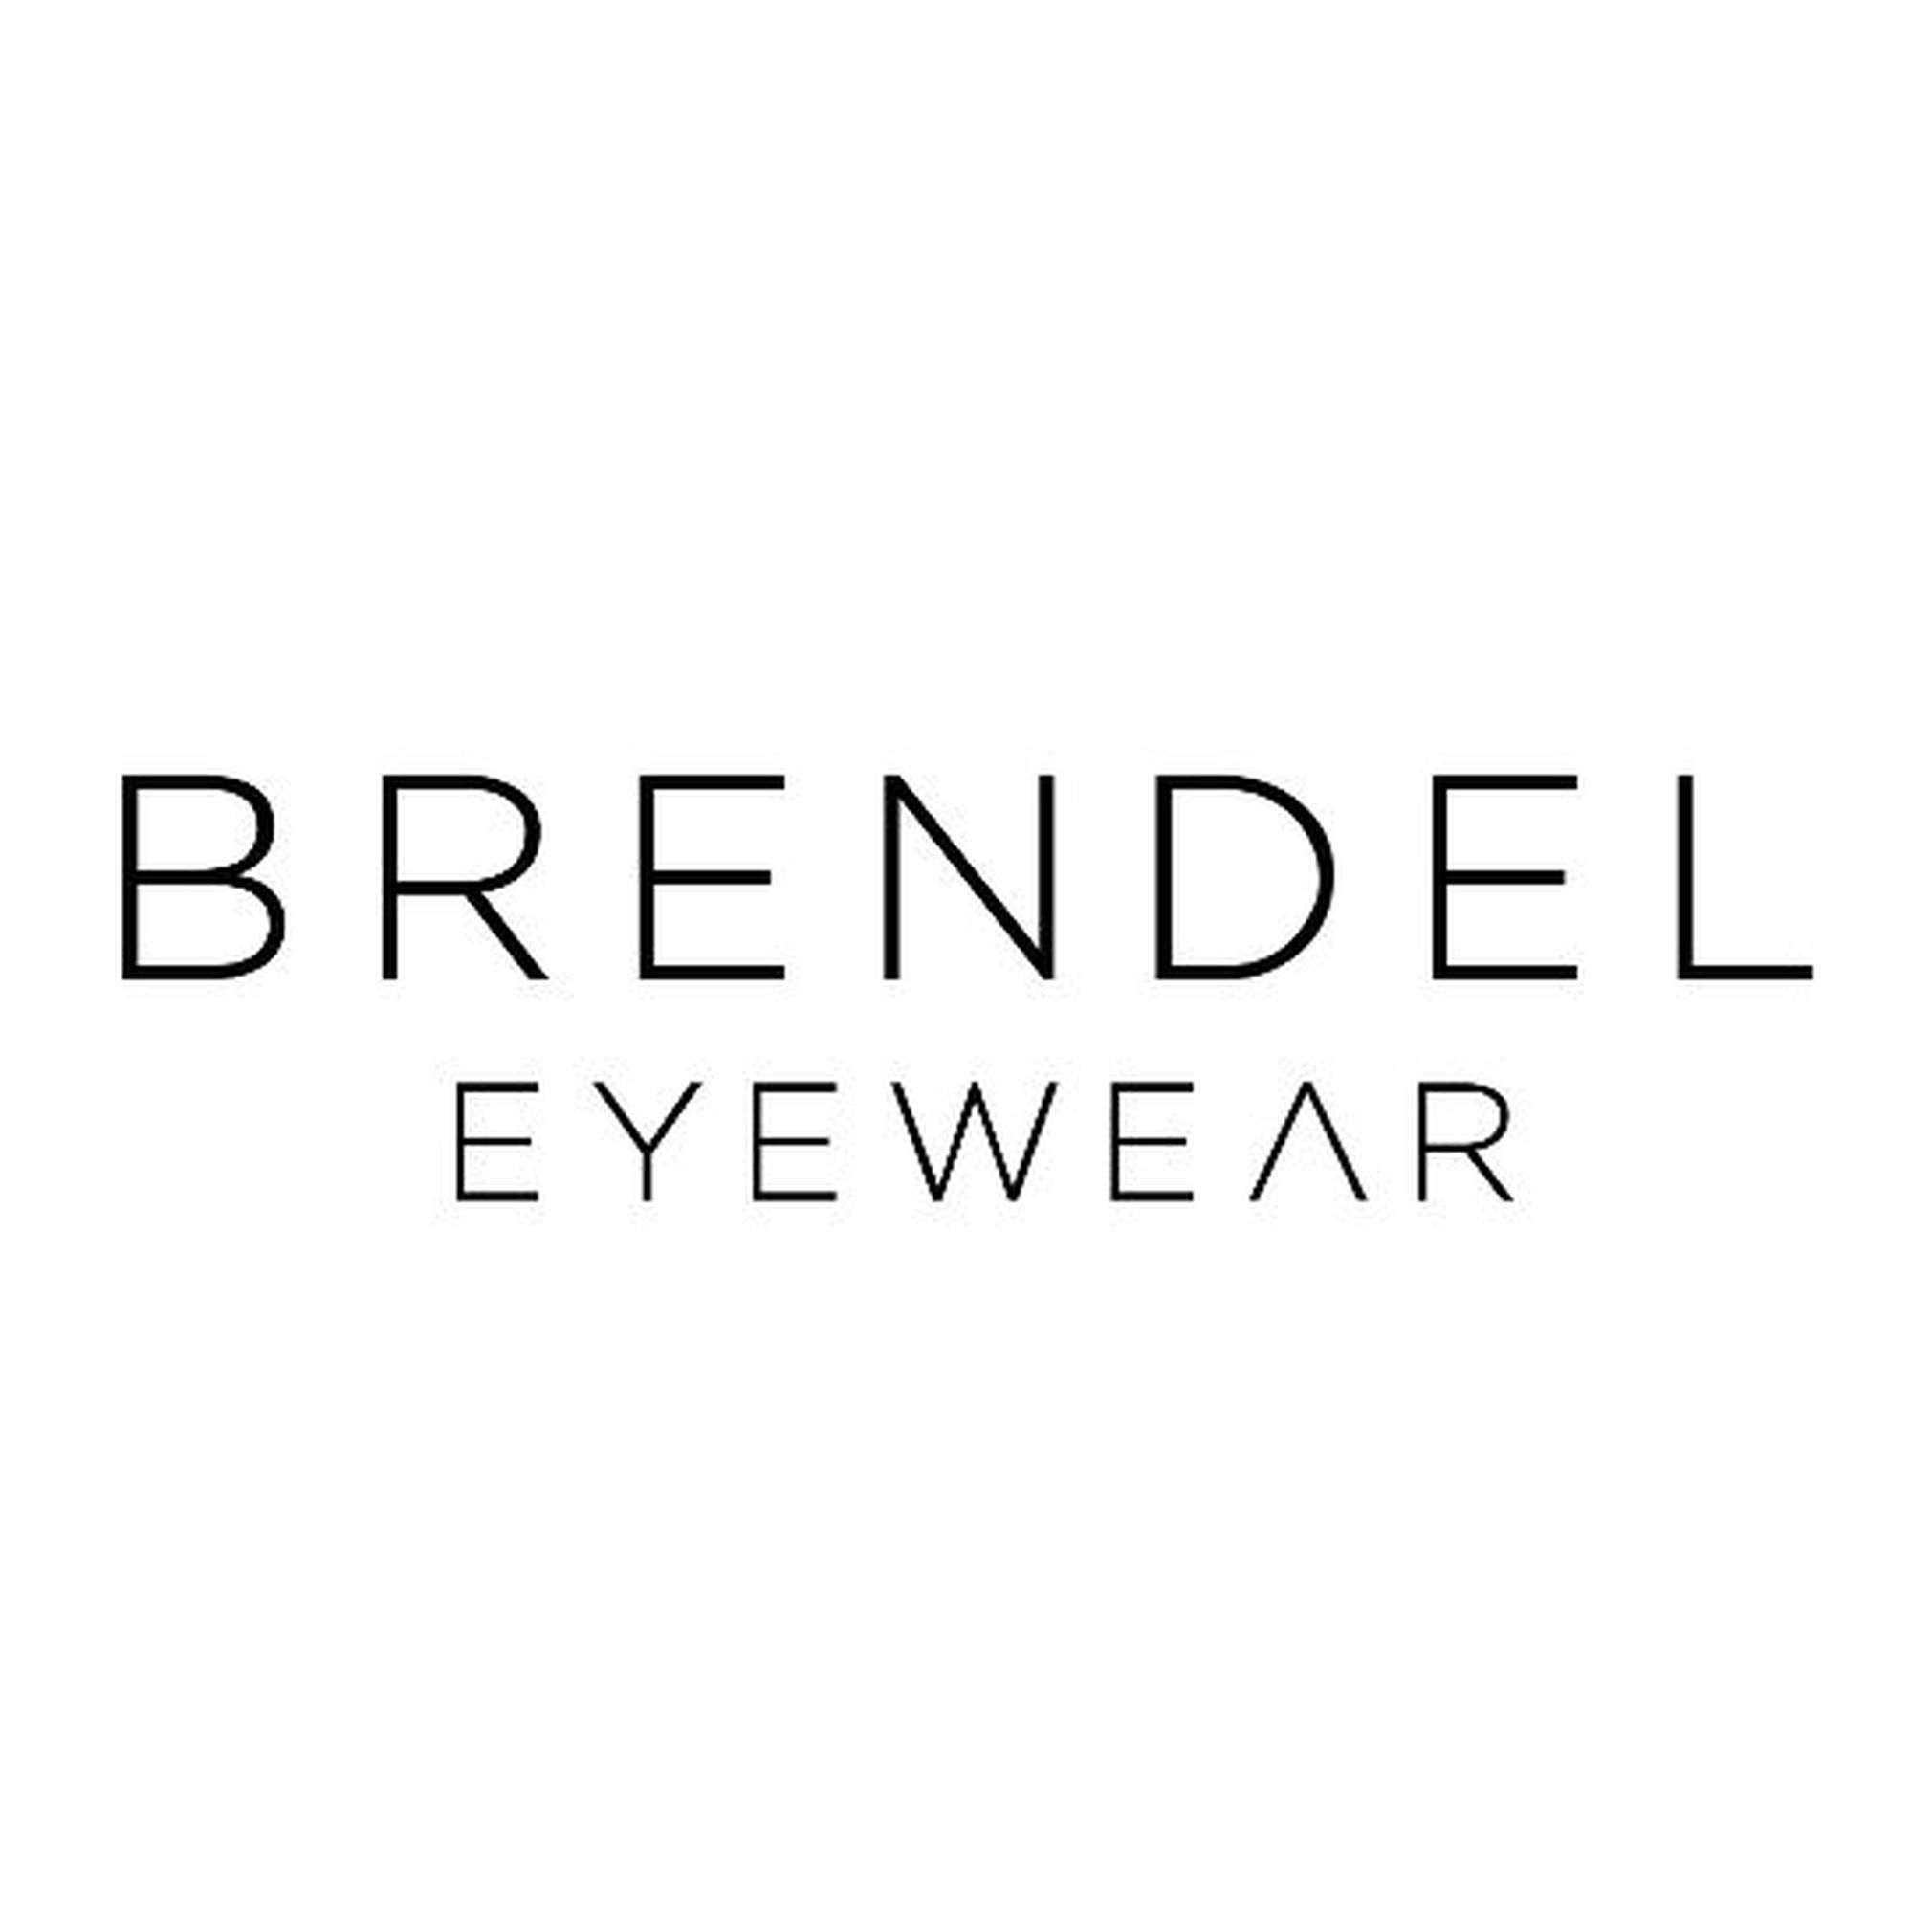 BRENDEL eyewear